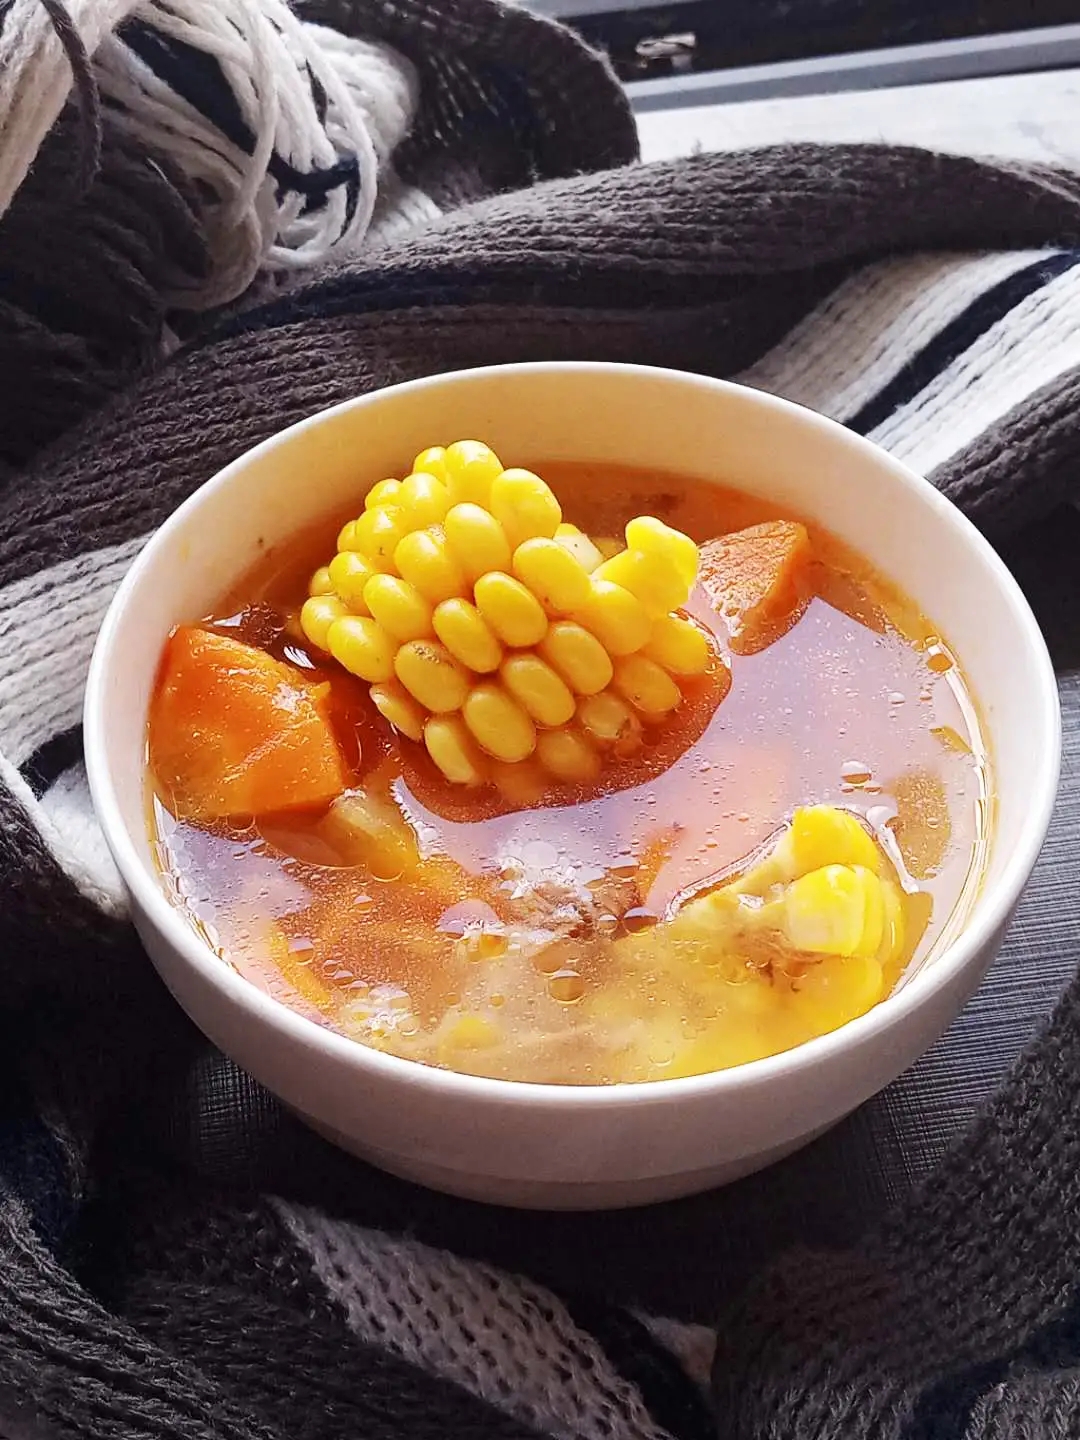 孕期滋补靓汤之胡萝卜玉米筒骨汤的做法